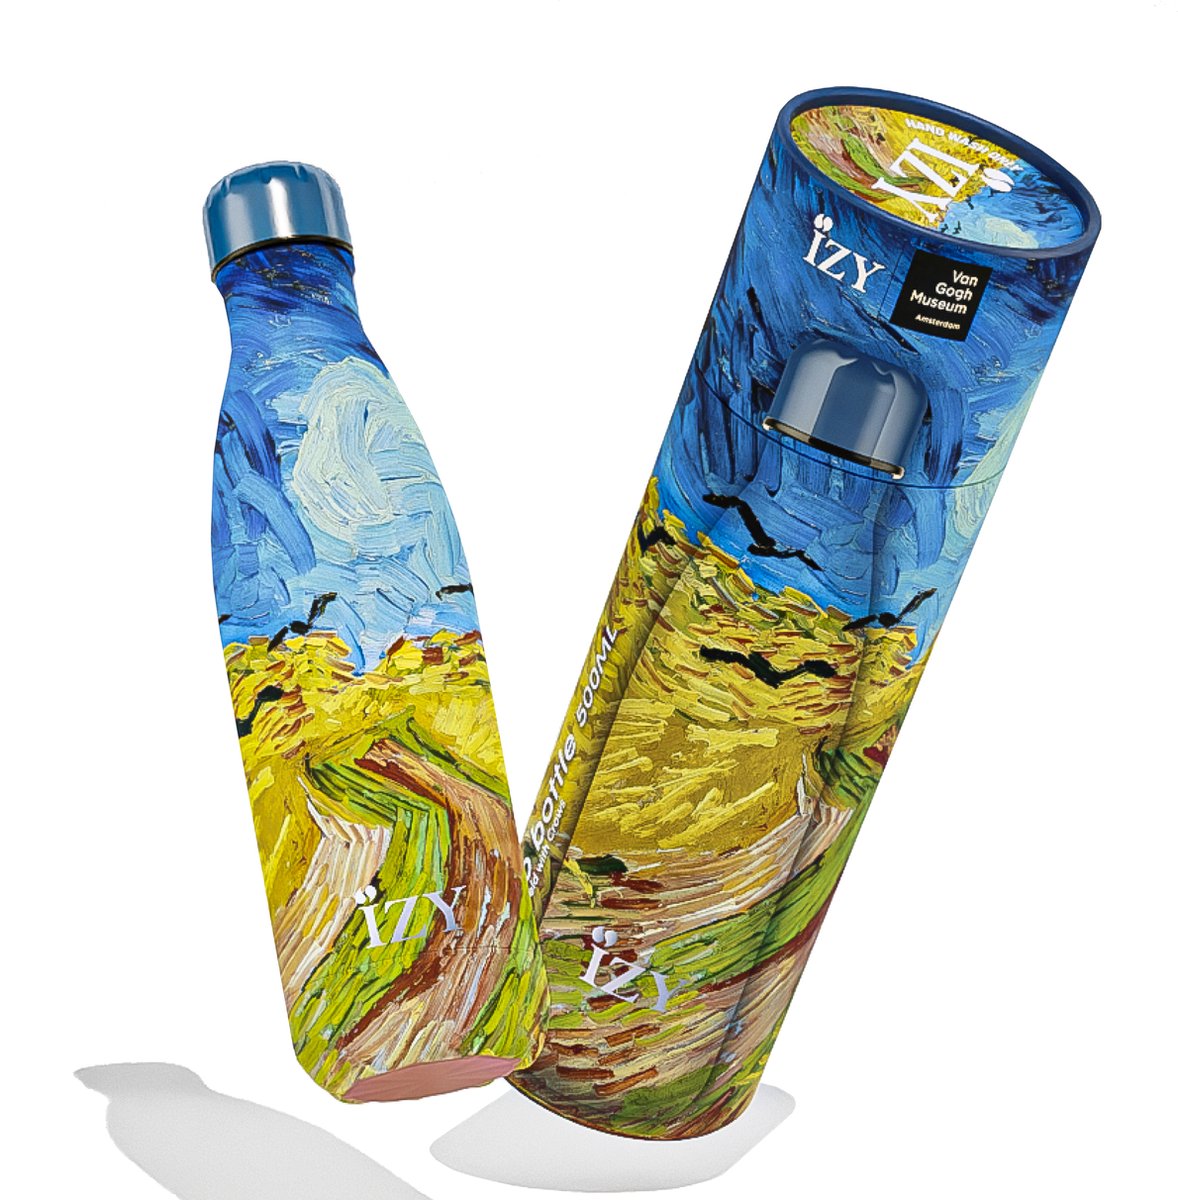 IZY Drinkfles - Van Gogh - Korenveld - Inclusief donatie - Waterfles - Thermosbeker - RVS - 12 uur lang warm - 500 ml